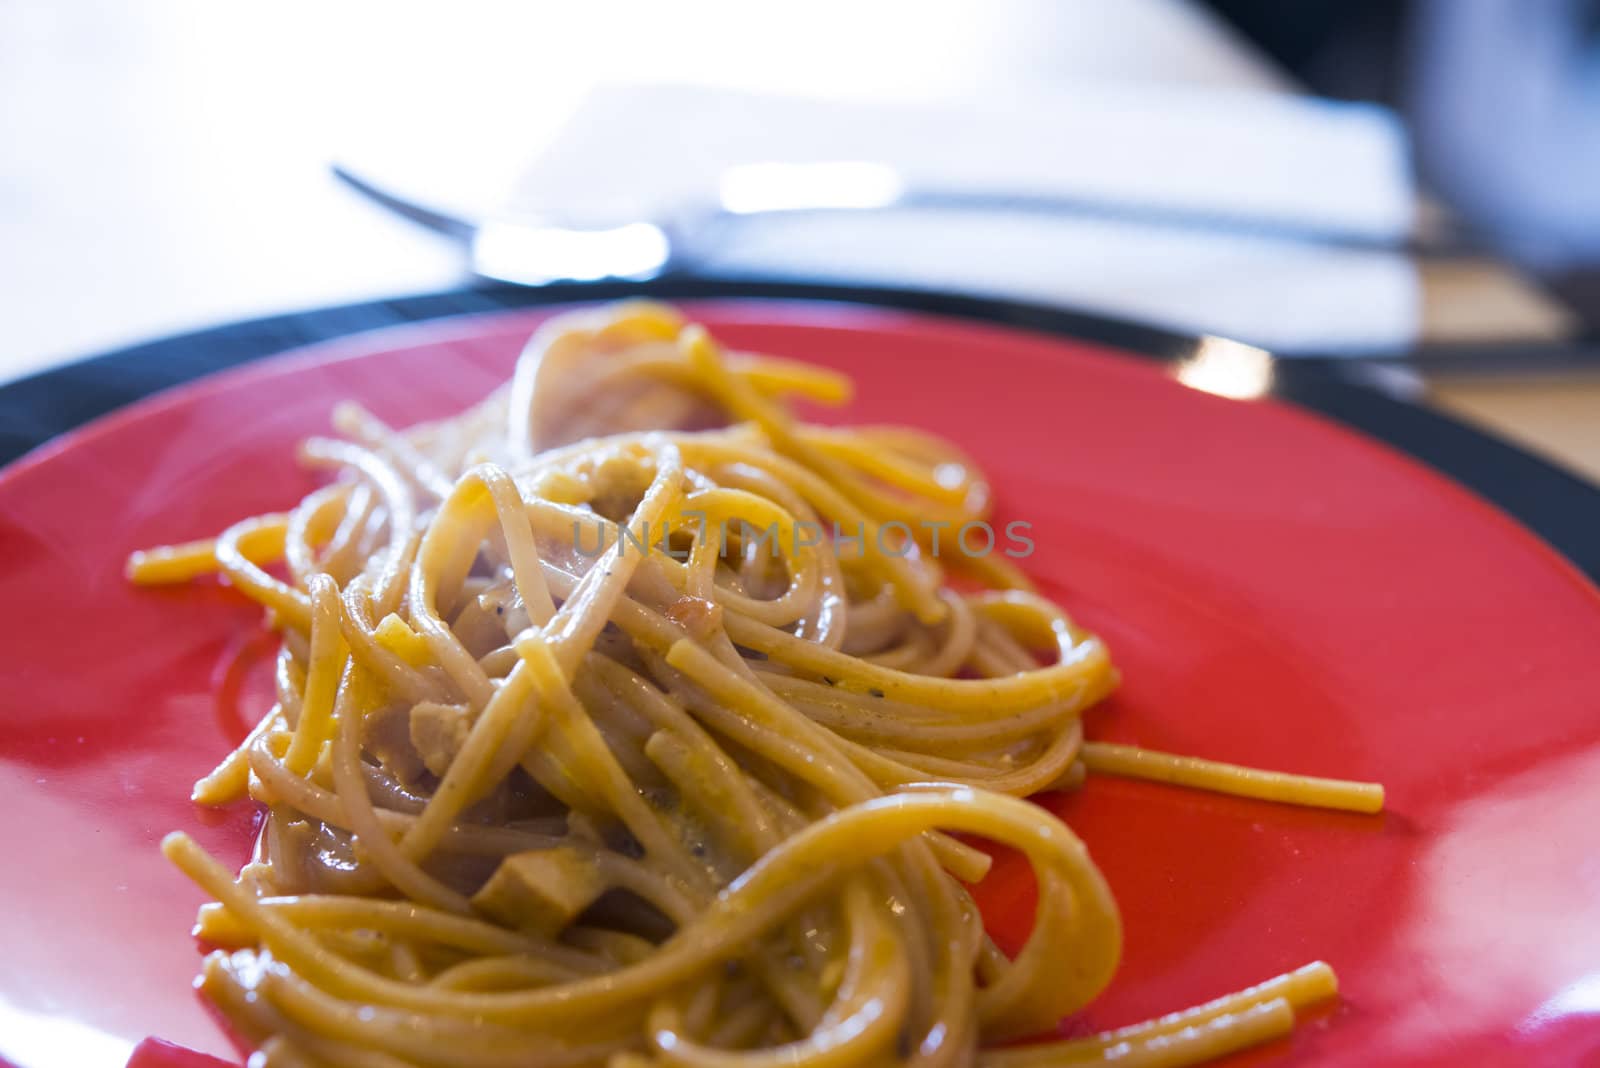 Spaghetti alla carbonara by mizio1970